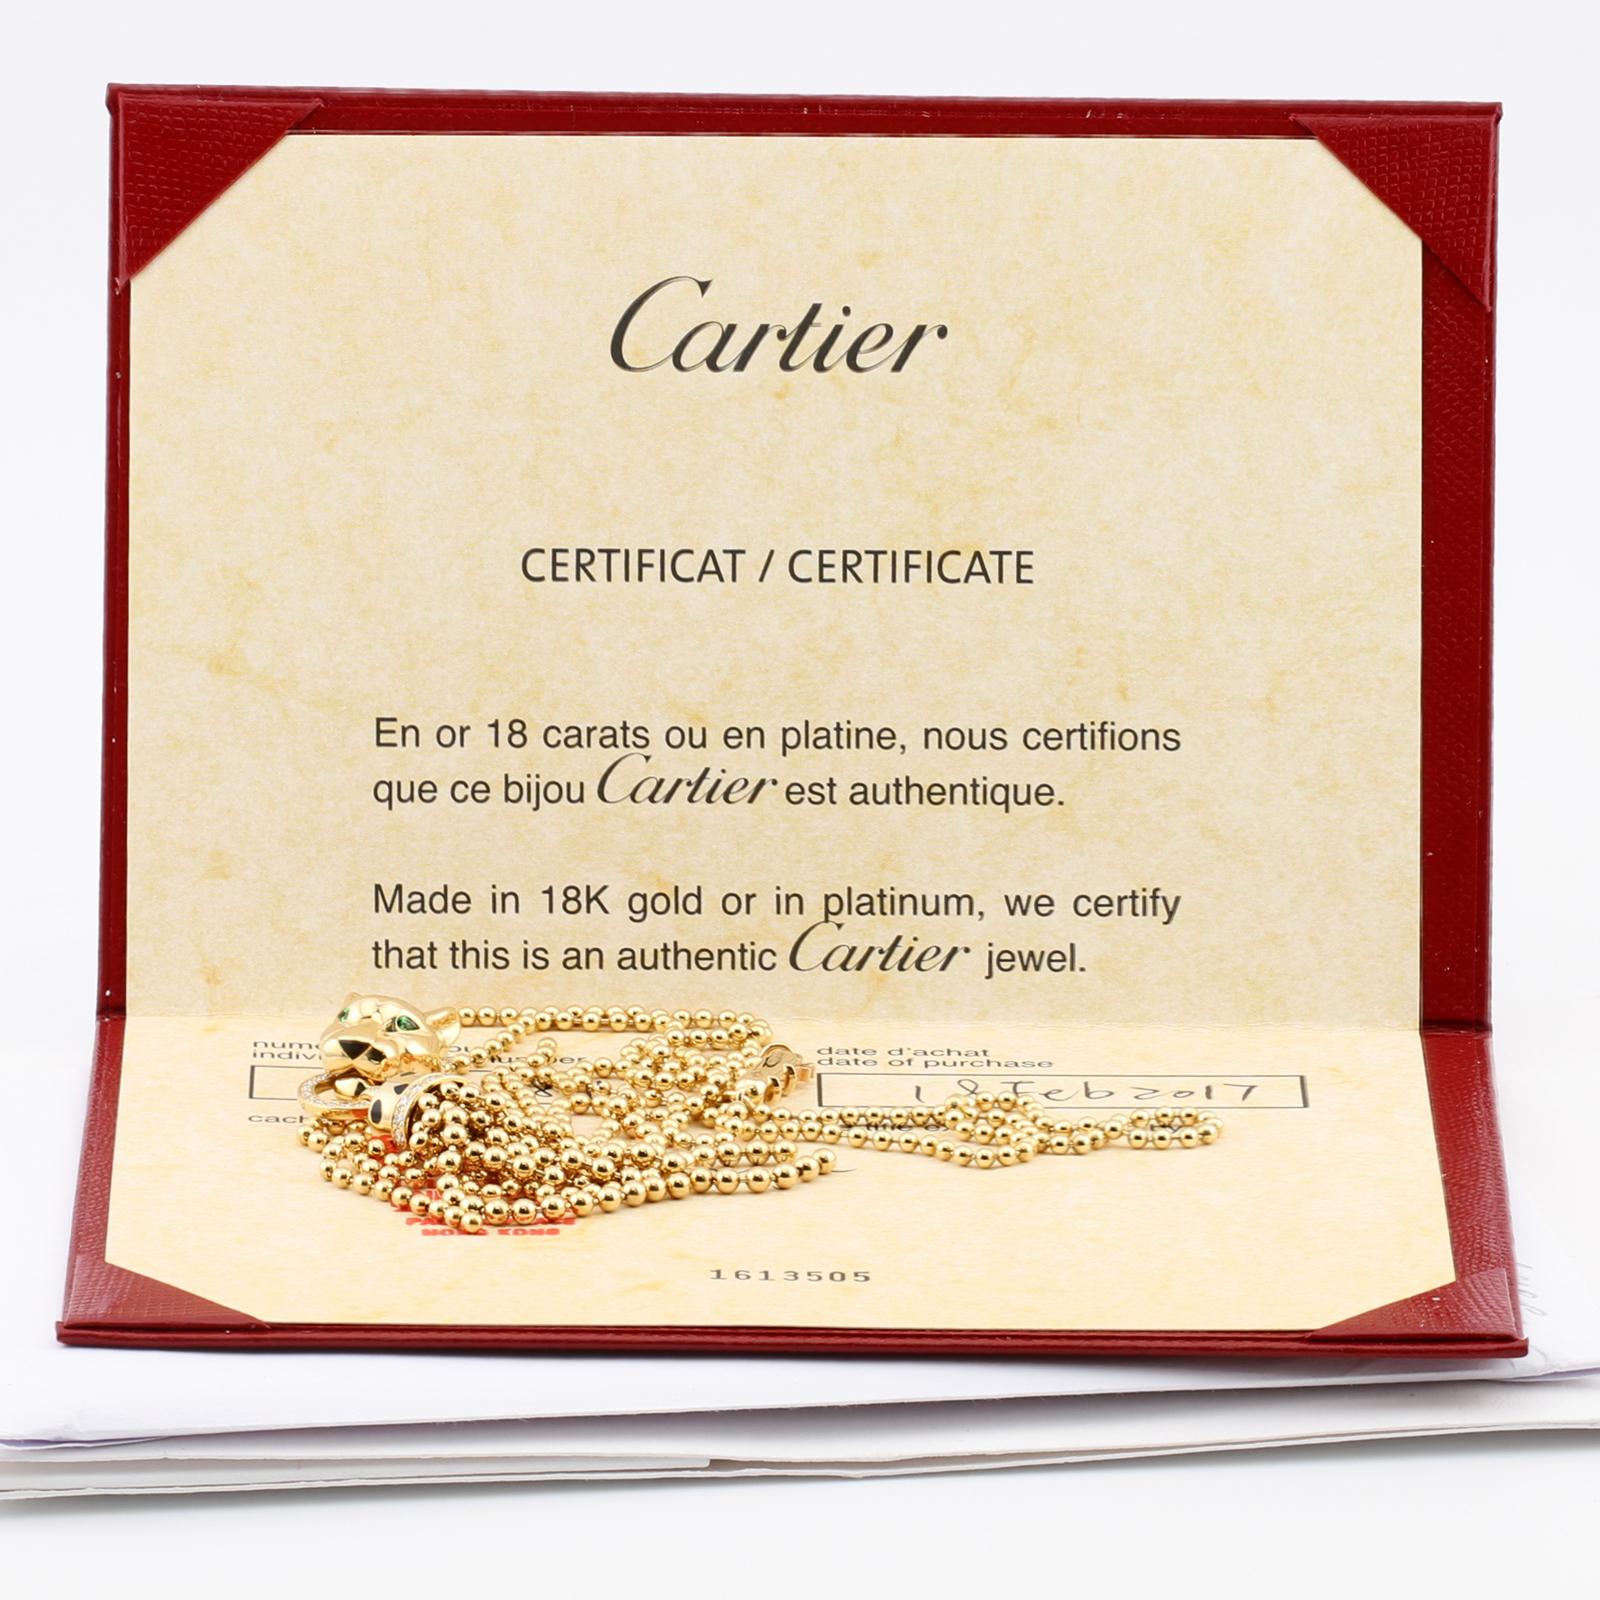 Cet authentique collier Panthère de Cartier présente un pendentif panthère en or jaune 18 carats avec des taches de laque noire, des yeux en grenat tsavorite, un nez en onyx et 36 diamants taille brillant d'une valeur totale de 0,24 carat. Fabriqué